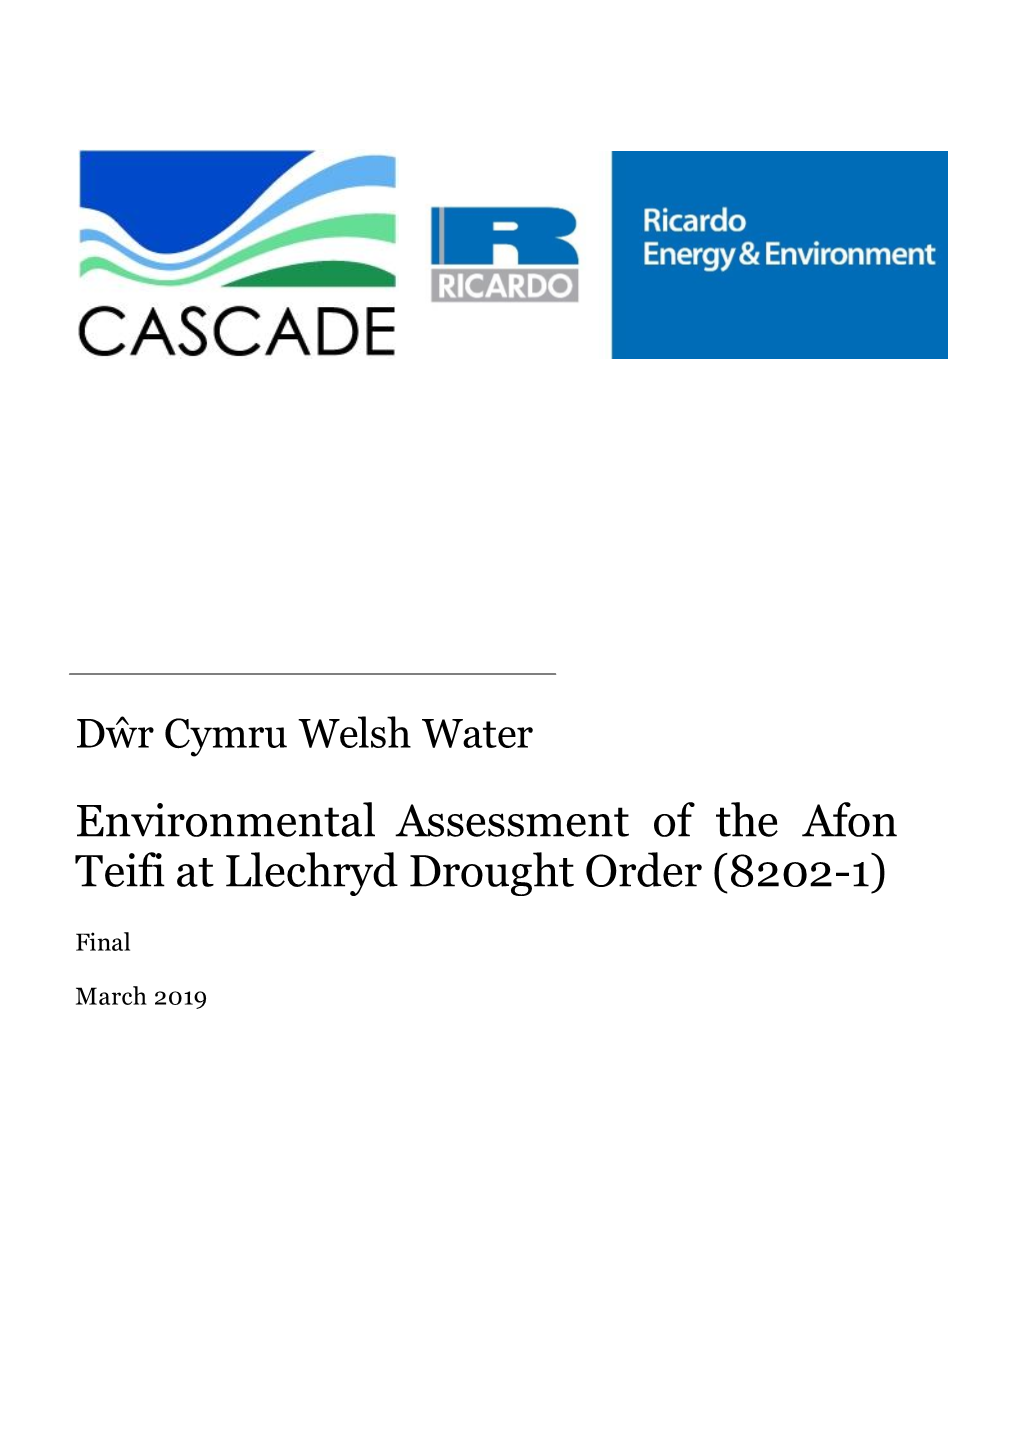 Environmental Assessment of the Afon Teifi at Llechryd Drought Order (8202-1)